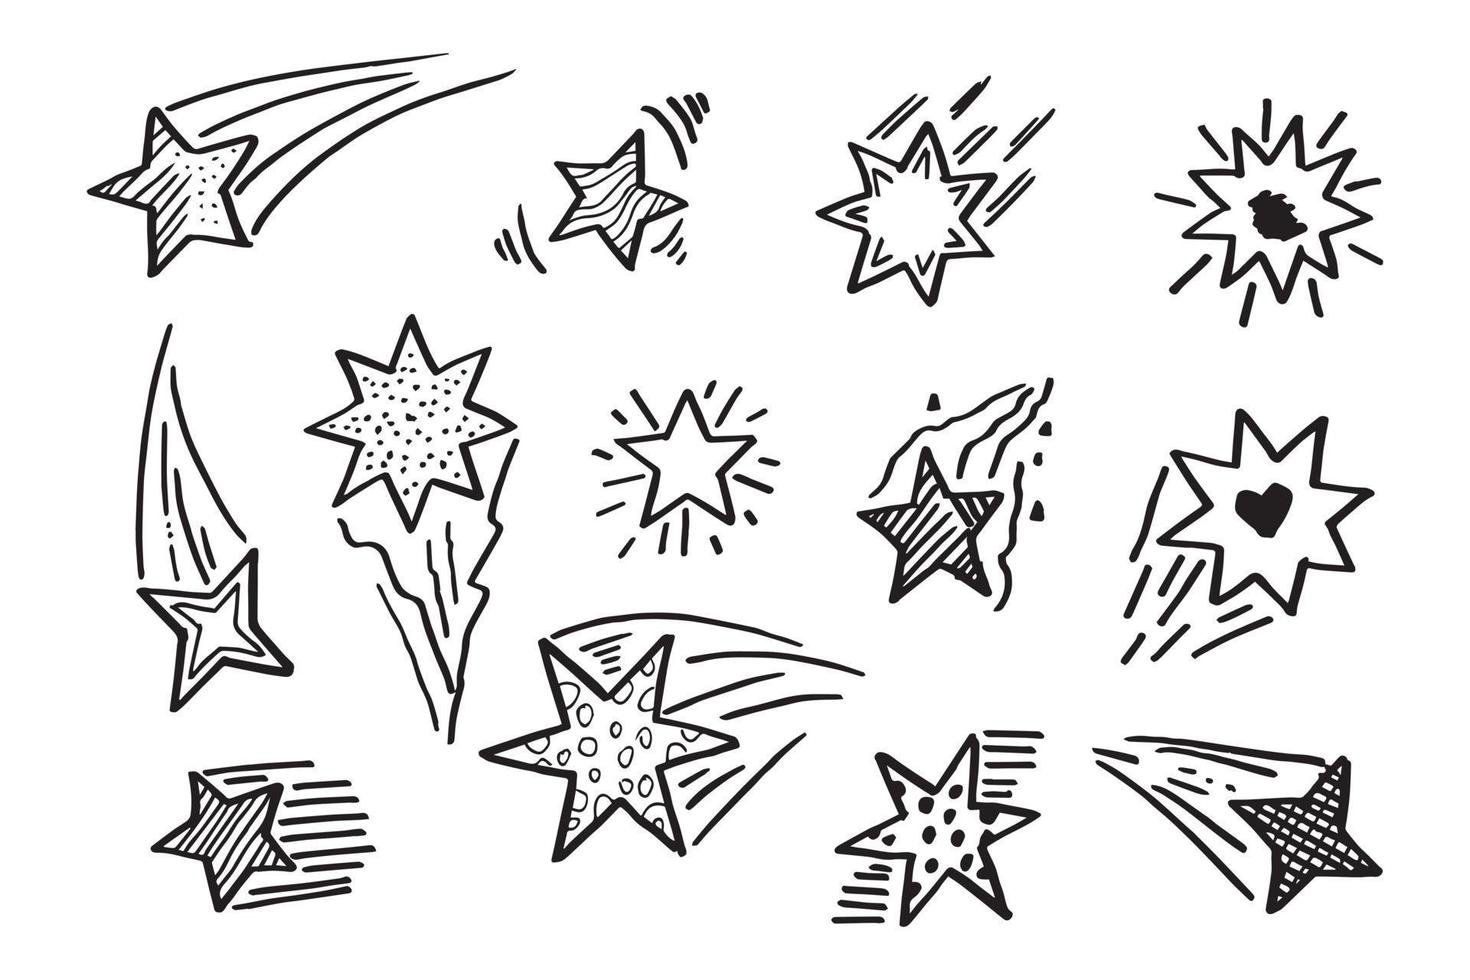 starburst doodle set. handritad stjärna. vektor